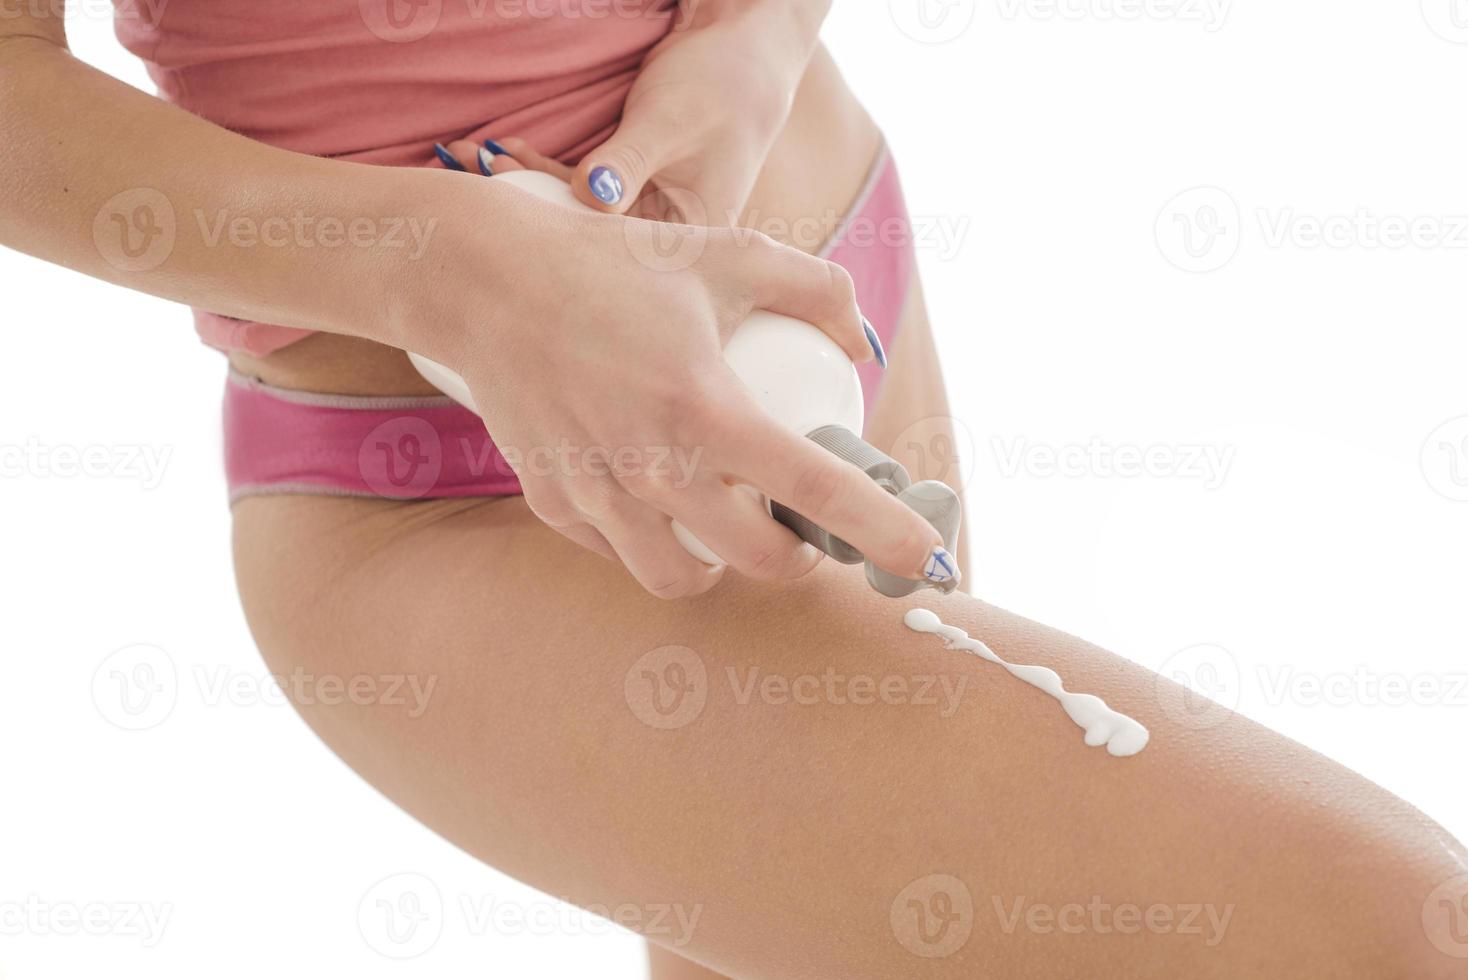 cuidado del cuerpo. mujer aplicando crema en las piernas. mujer aplicando crema anticelulítica foto